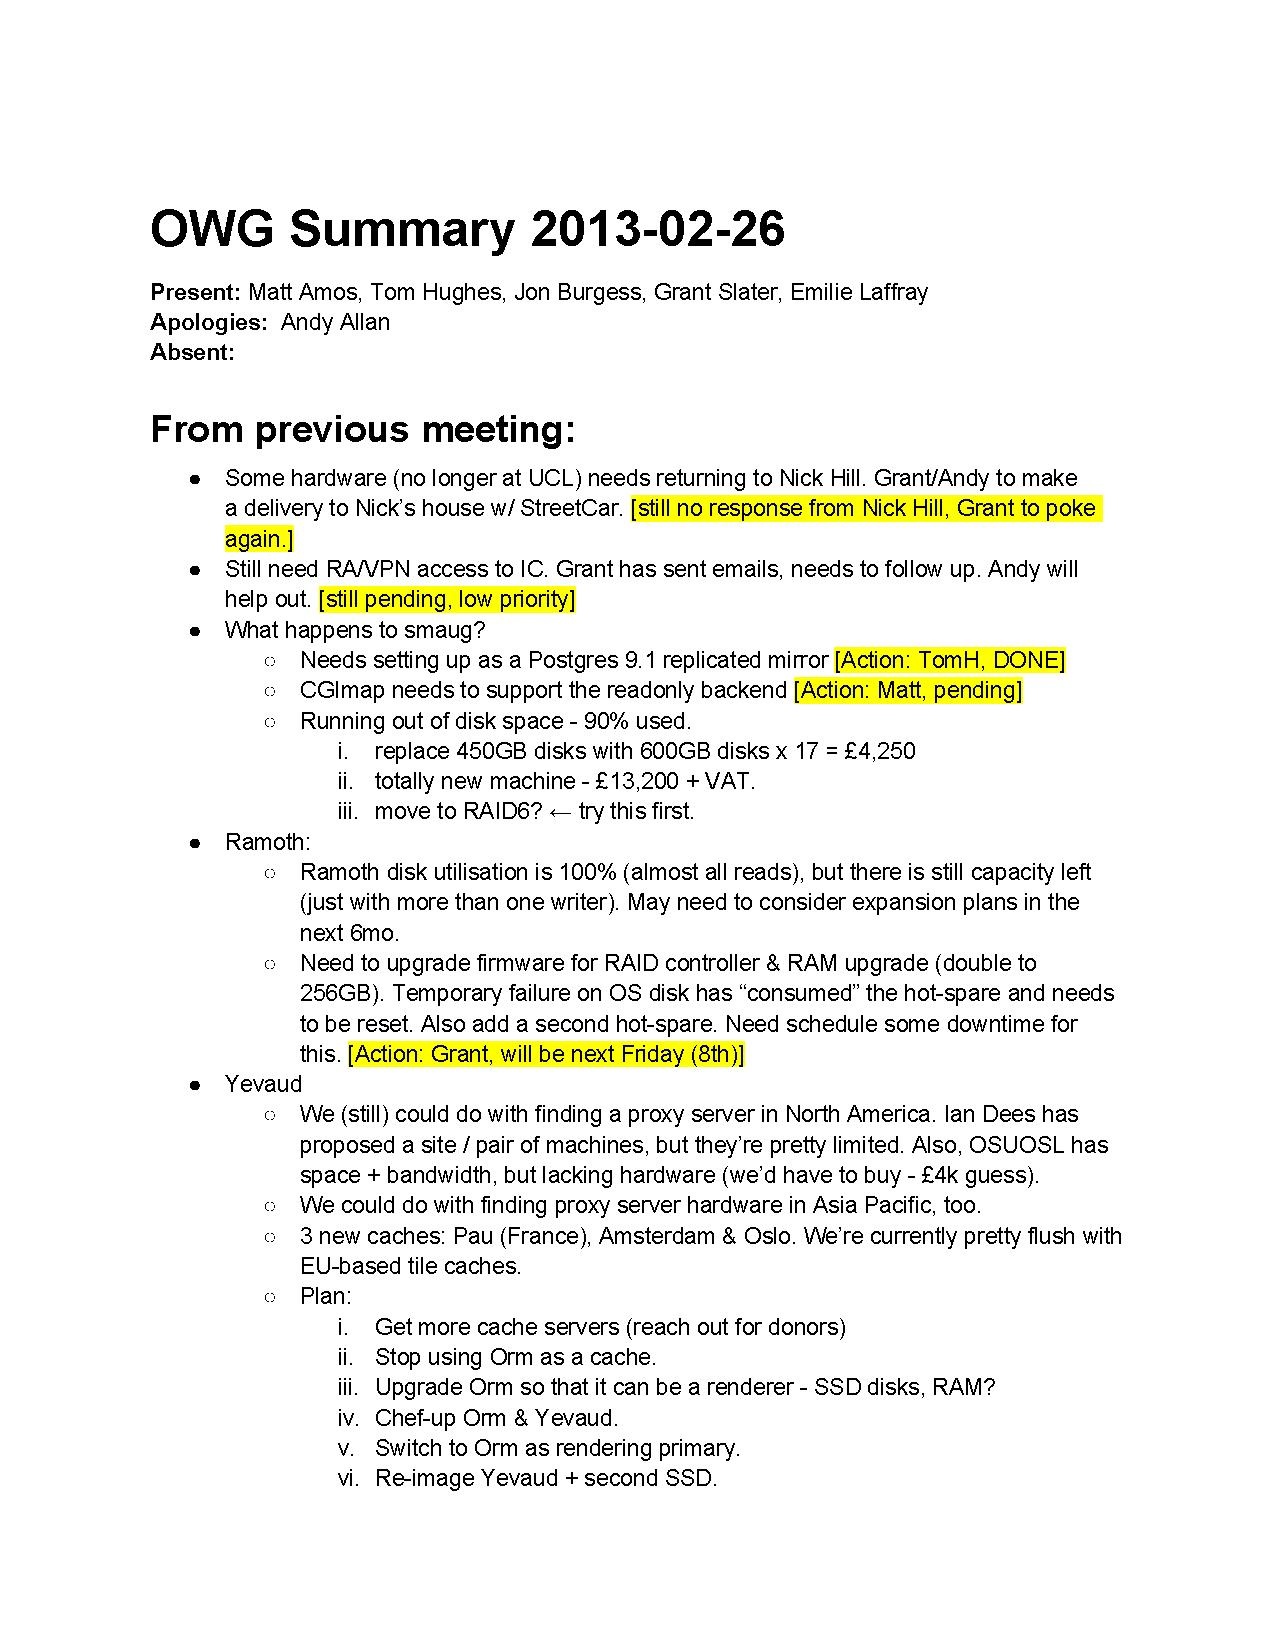 OWG Summary 2013-02-26.pdf